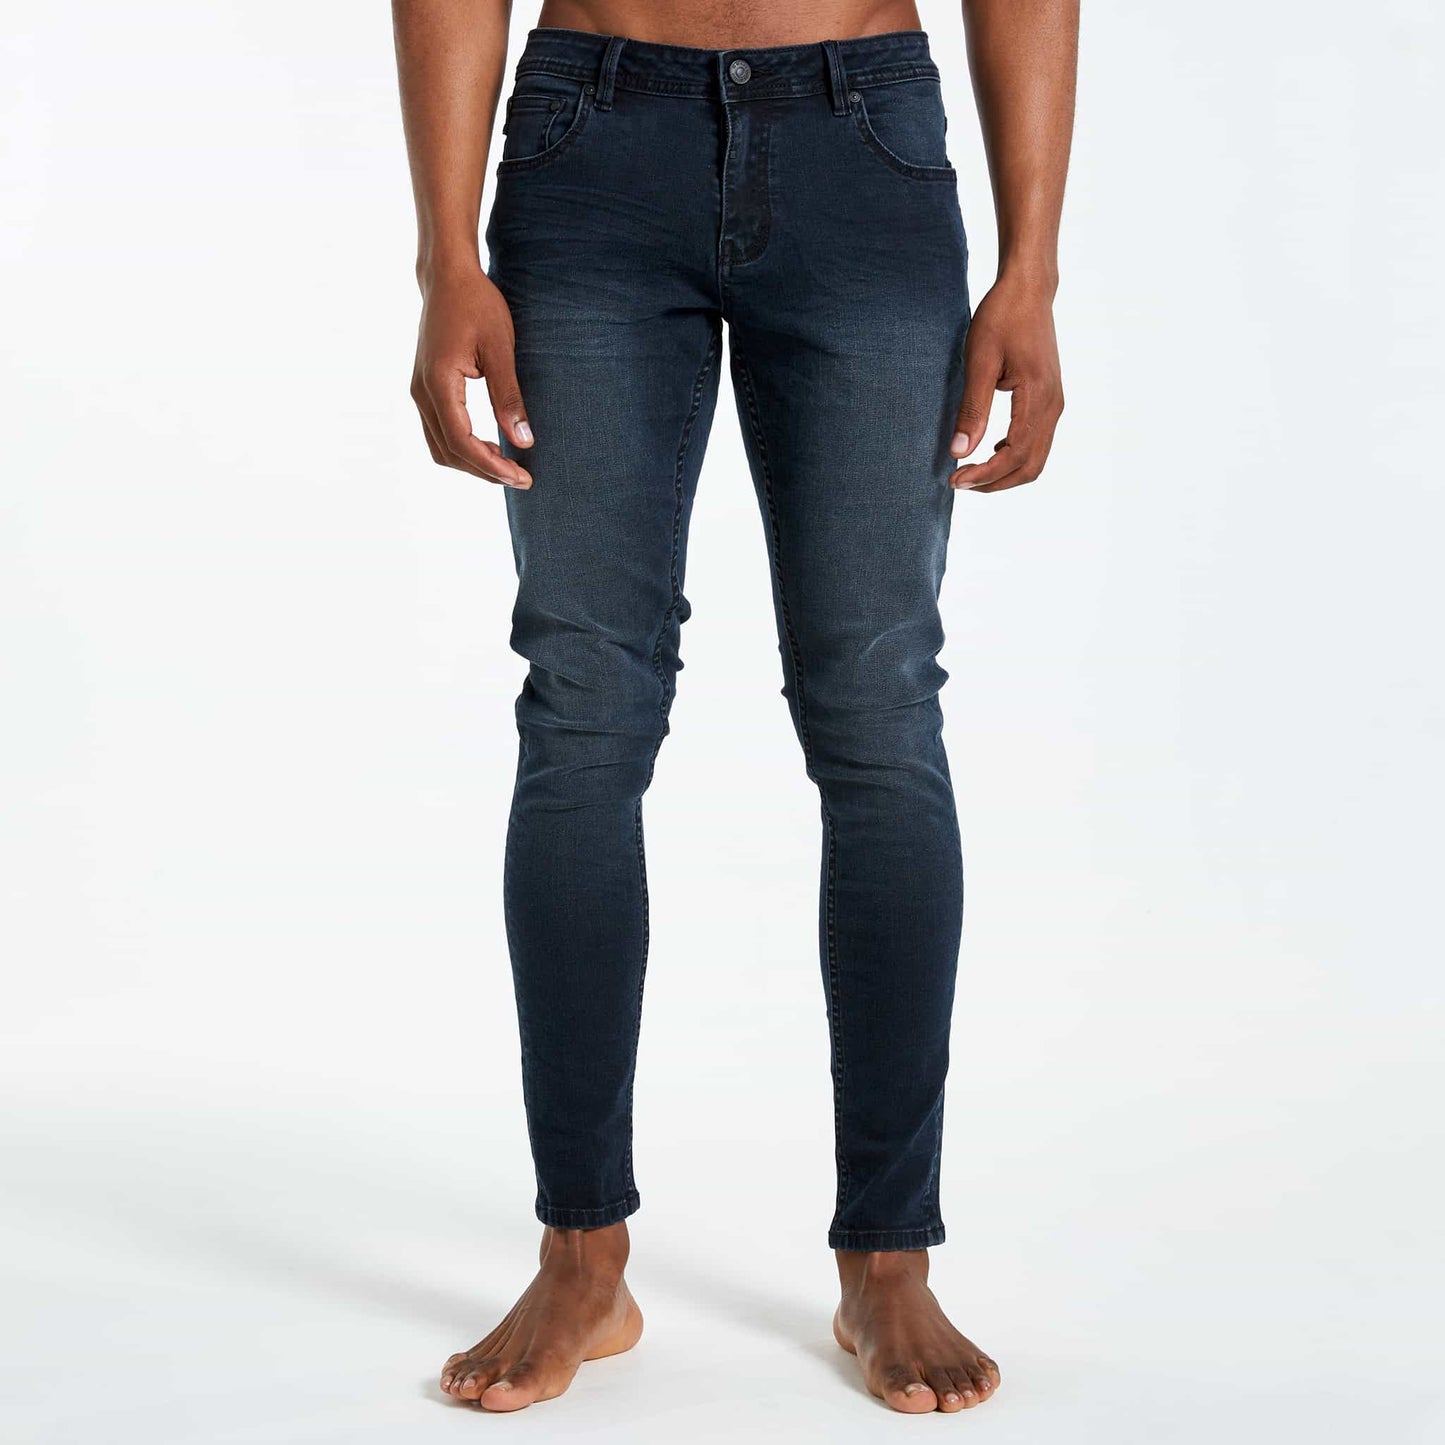 Basalt Jeans - Blue/Black